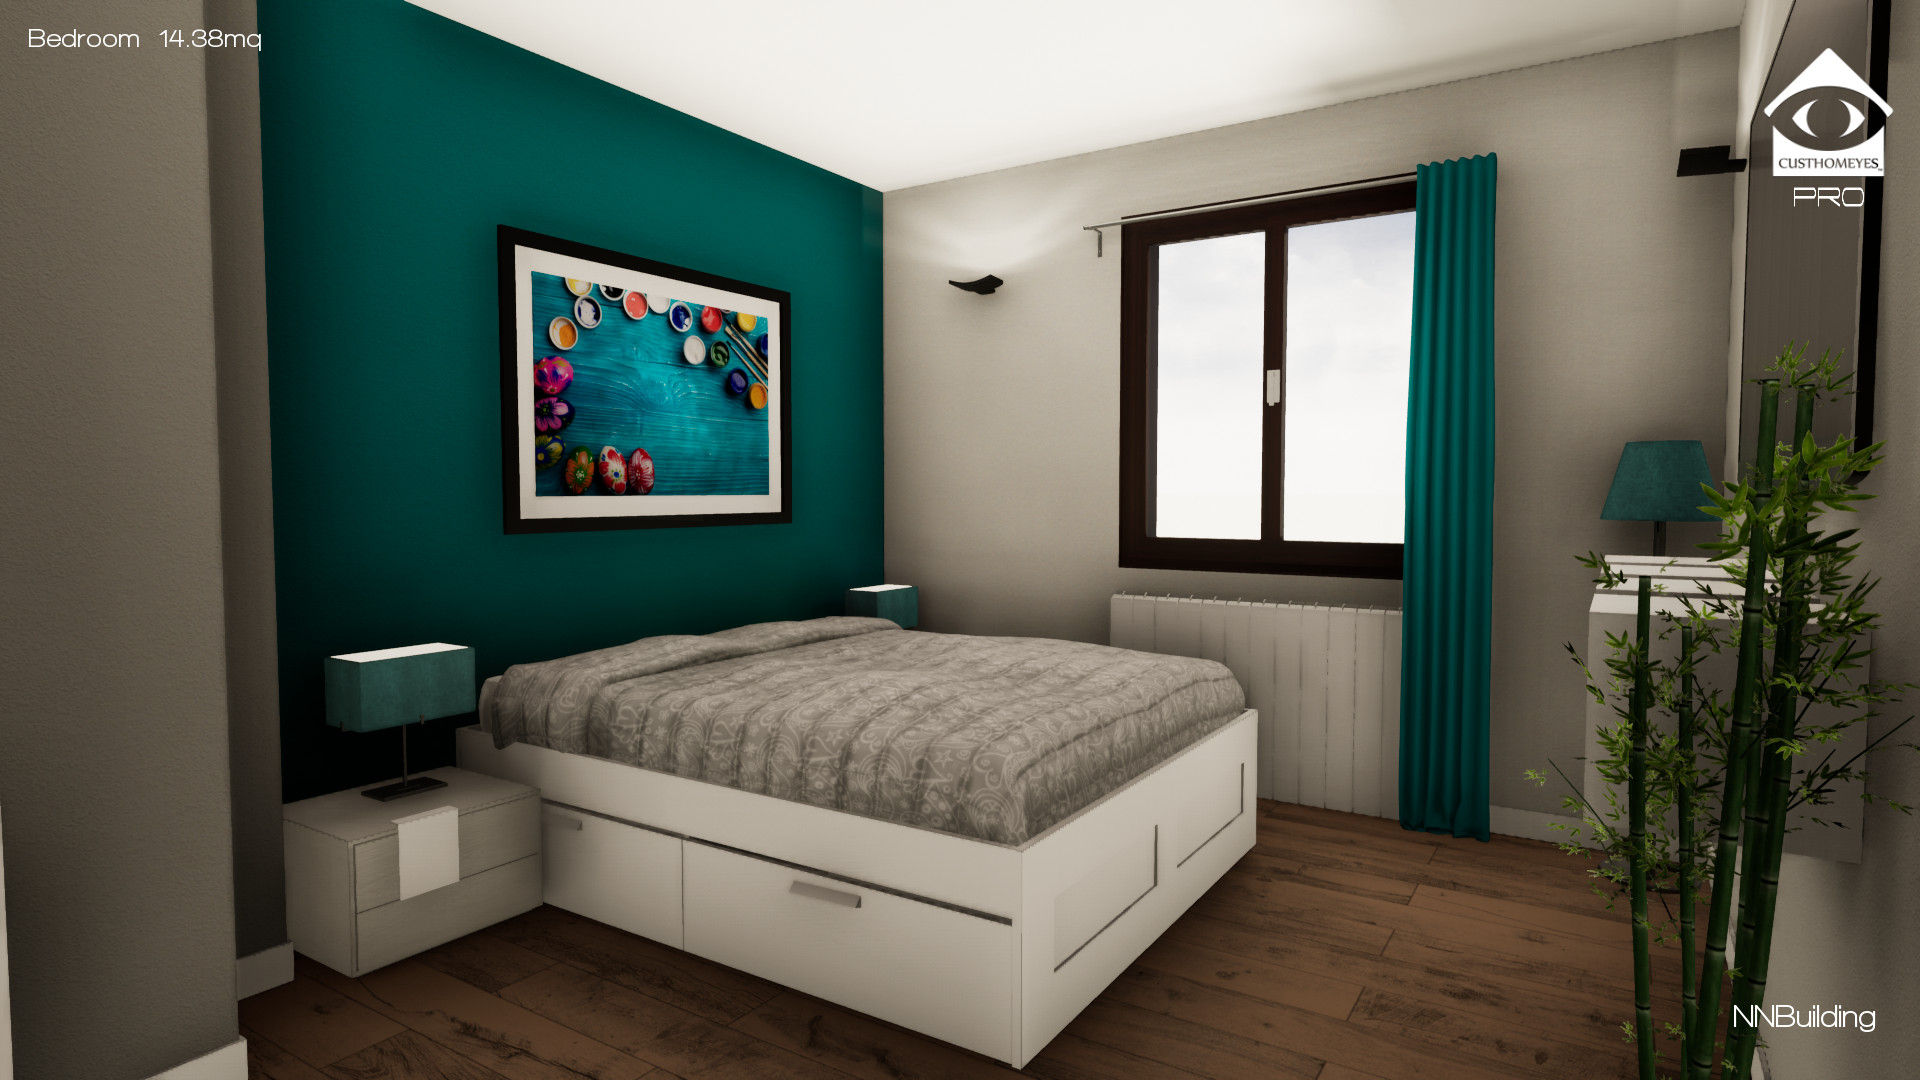 Camera da letto NNBuilding Camera da letto in stile classico Mobilia,Proprietà,Edificio,Finestra,Pianta,Comfort,Azzurro,Di legno,Colore,Rettangolo